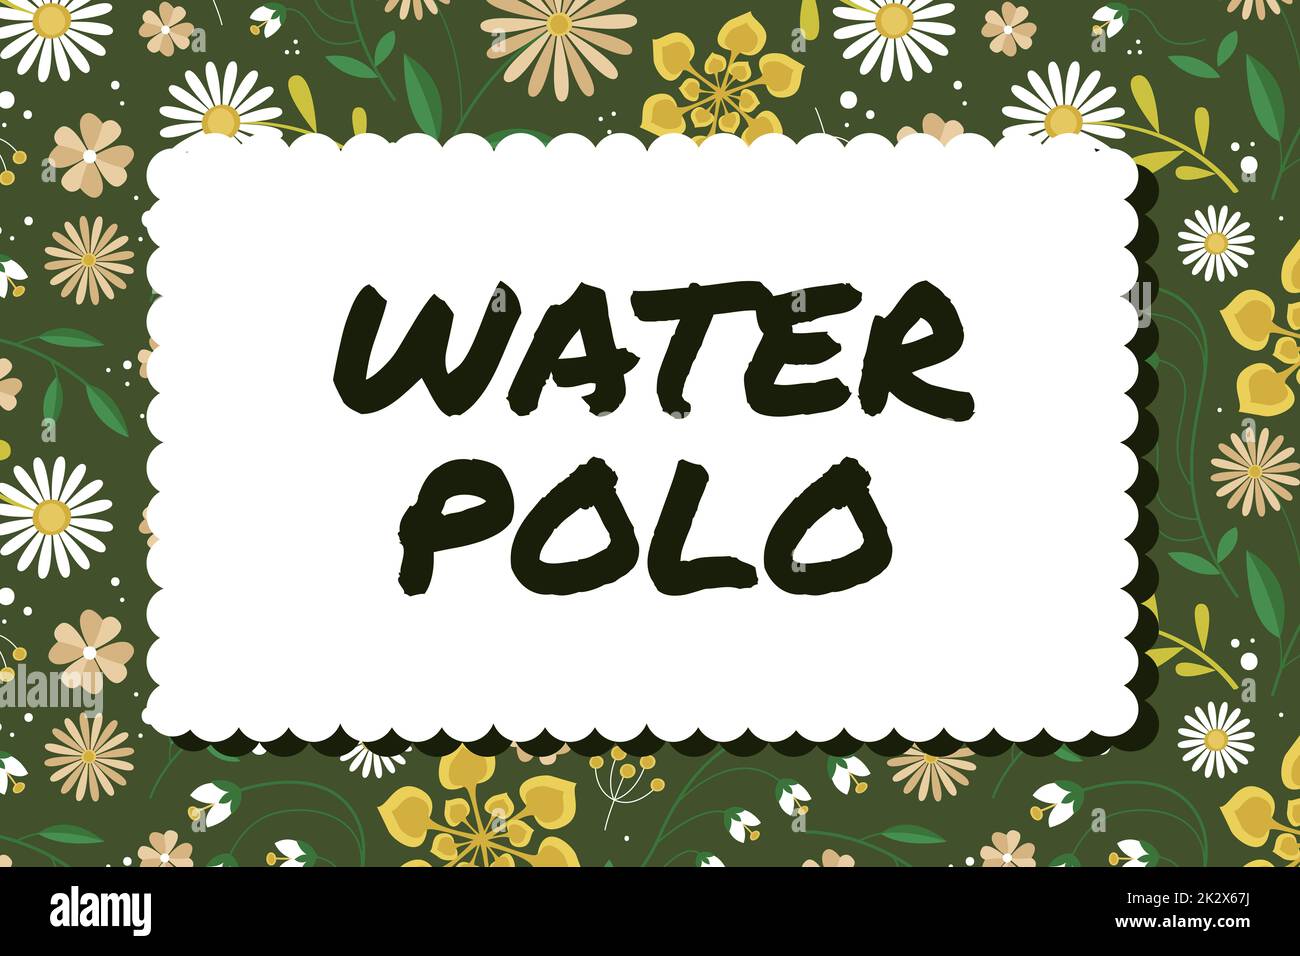 Konzeptionelle Darstellung Wasserpolo. Ein Wort über den Wettkampfsport der Mannschaft, der zwischen zwei Teams im Wasser gespielt wurde Rahmen mit farbenfrohen Blumen und Blattwerk harmonisch gestaltet. Stockfoto